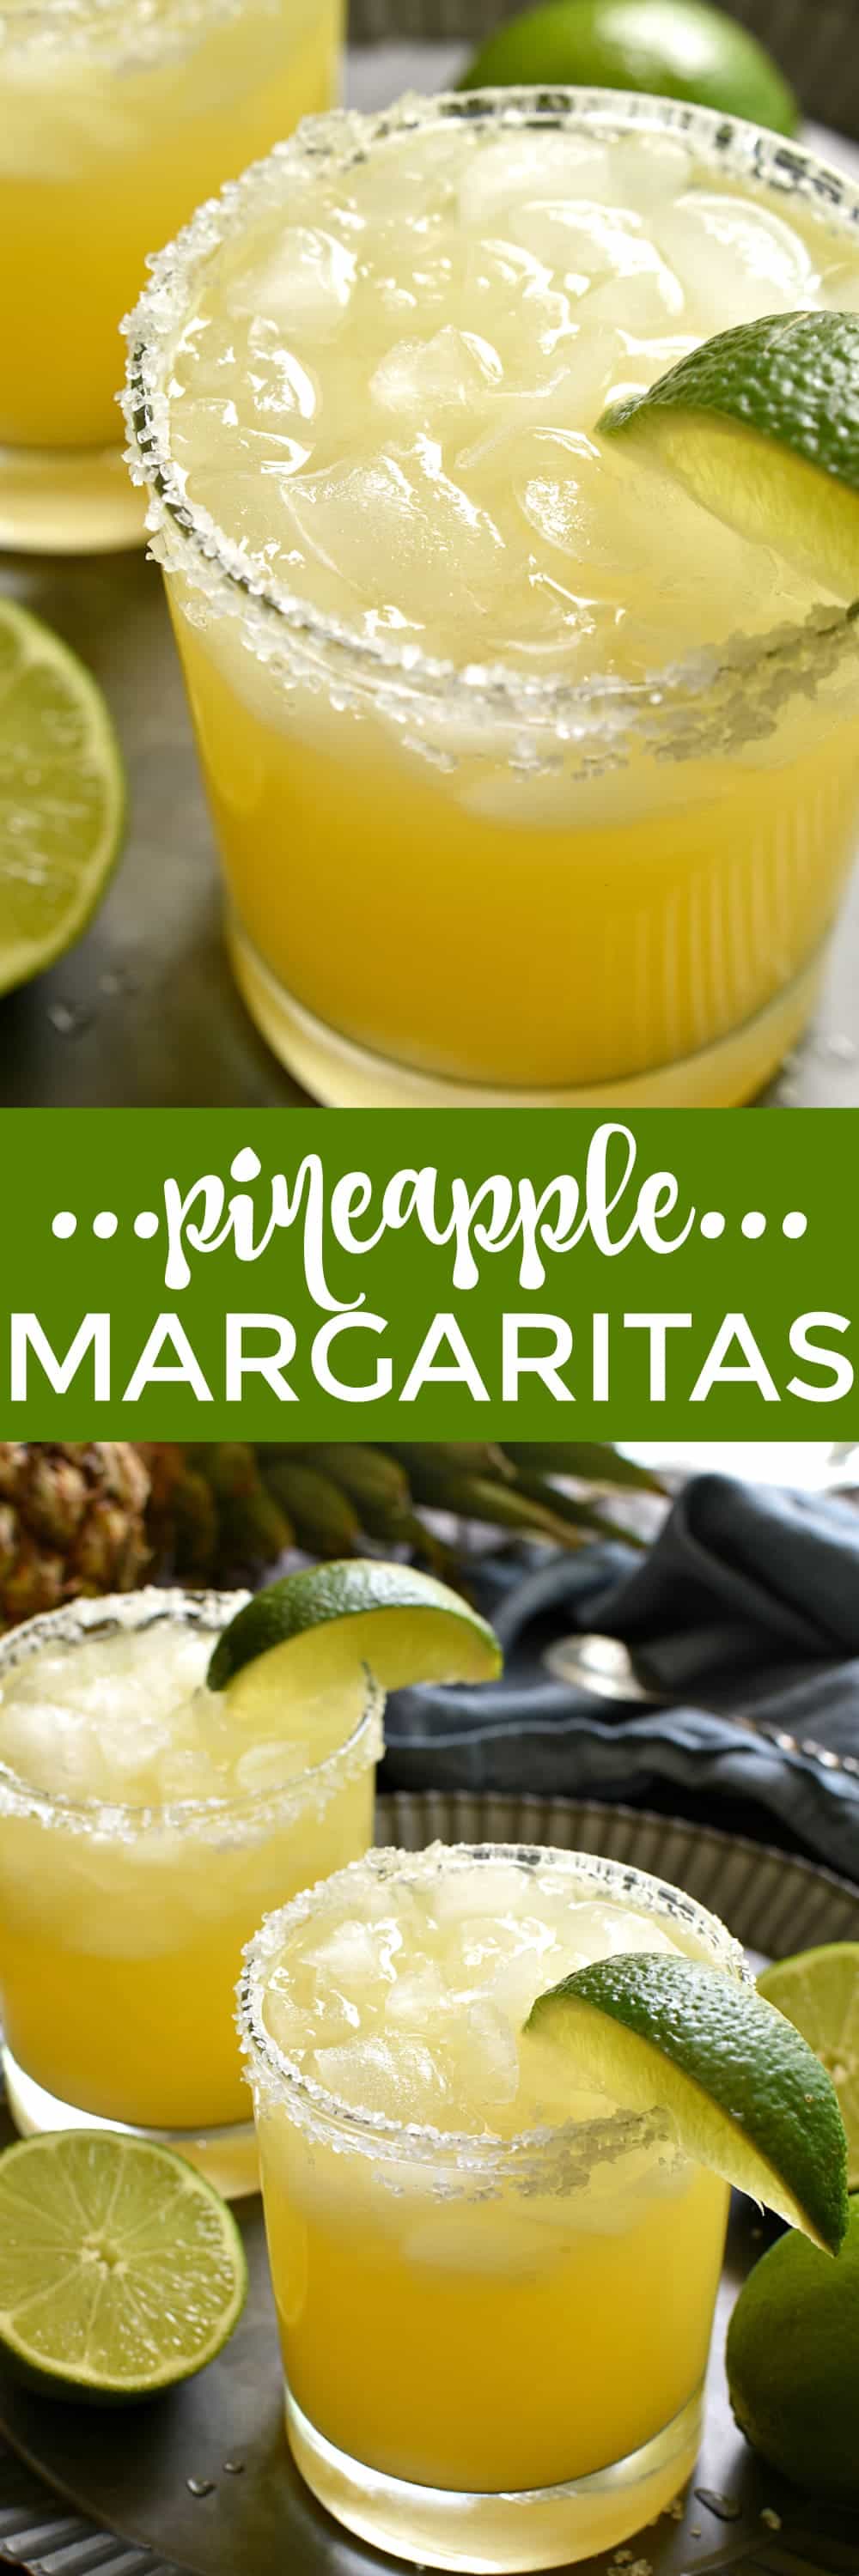 Questi Margarita di ananas sono un tocco deliziosamente dolce e rinfrescante sull'originale! Realizzato con soli 4 ingredienti semplici e perfetto per l'happy hour, i fine settimana e tutta l'estate!